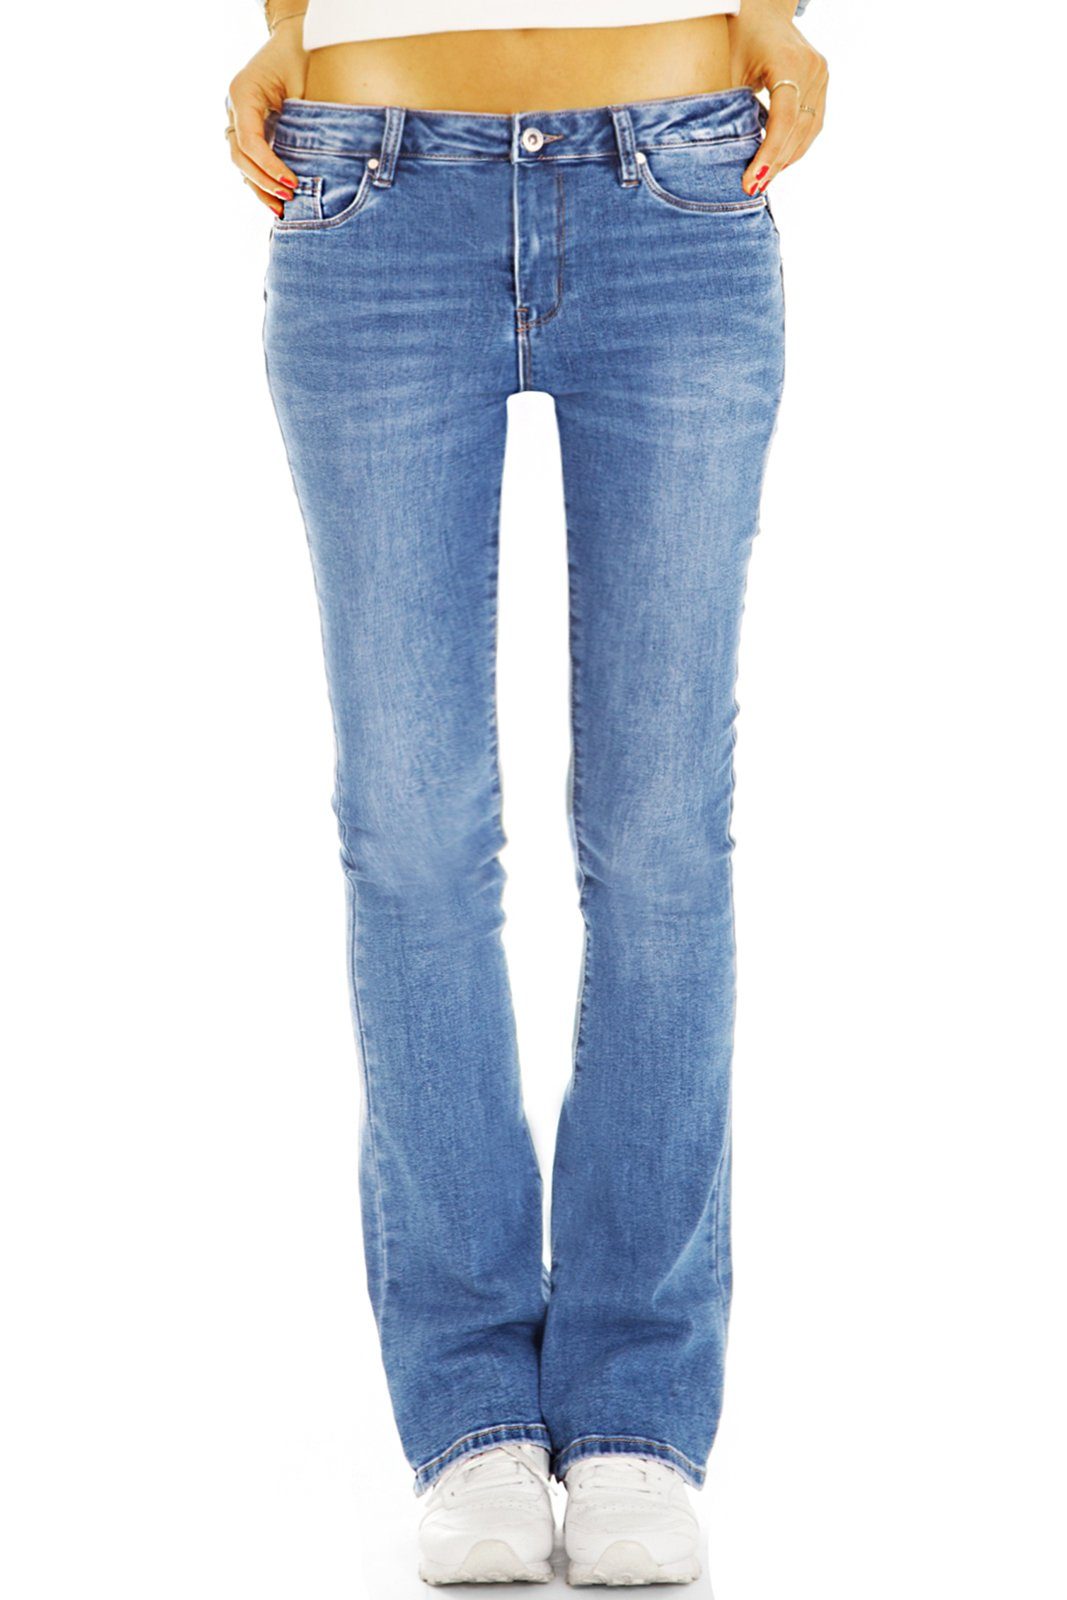 Hosen - Medium Waist Bootcut Stretch-Anteil, - dunkelblau bequeme Stretch Bootcut-Jeans Denim Damen j44p mit 5-Pocket-Style Jeans styled be